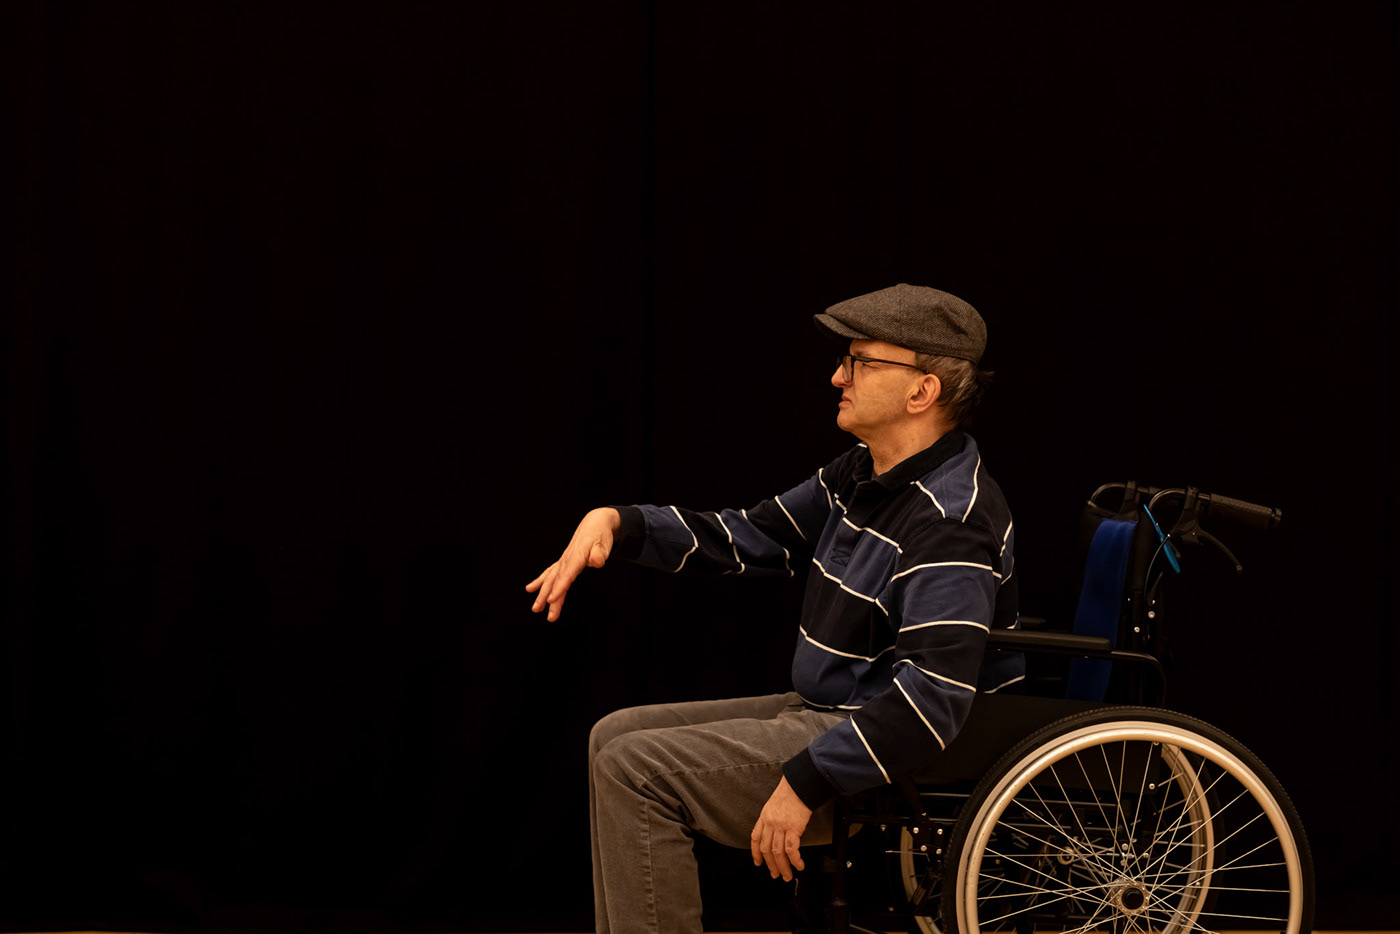 AMICI Dance Theatre Shane Aurousseau Photography  portrait autism motorneuronedisease downsyndrome cerebral palsy blindness Deafness